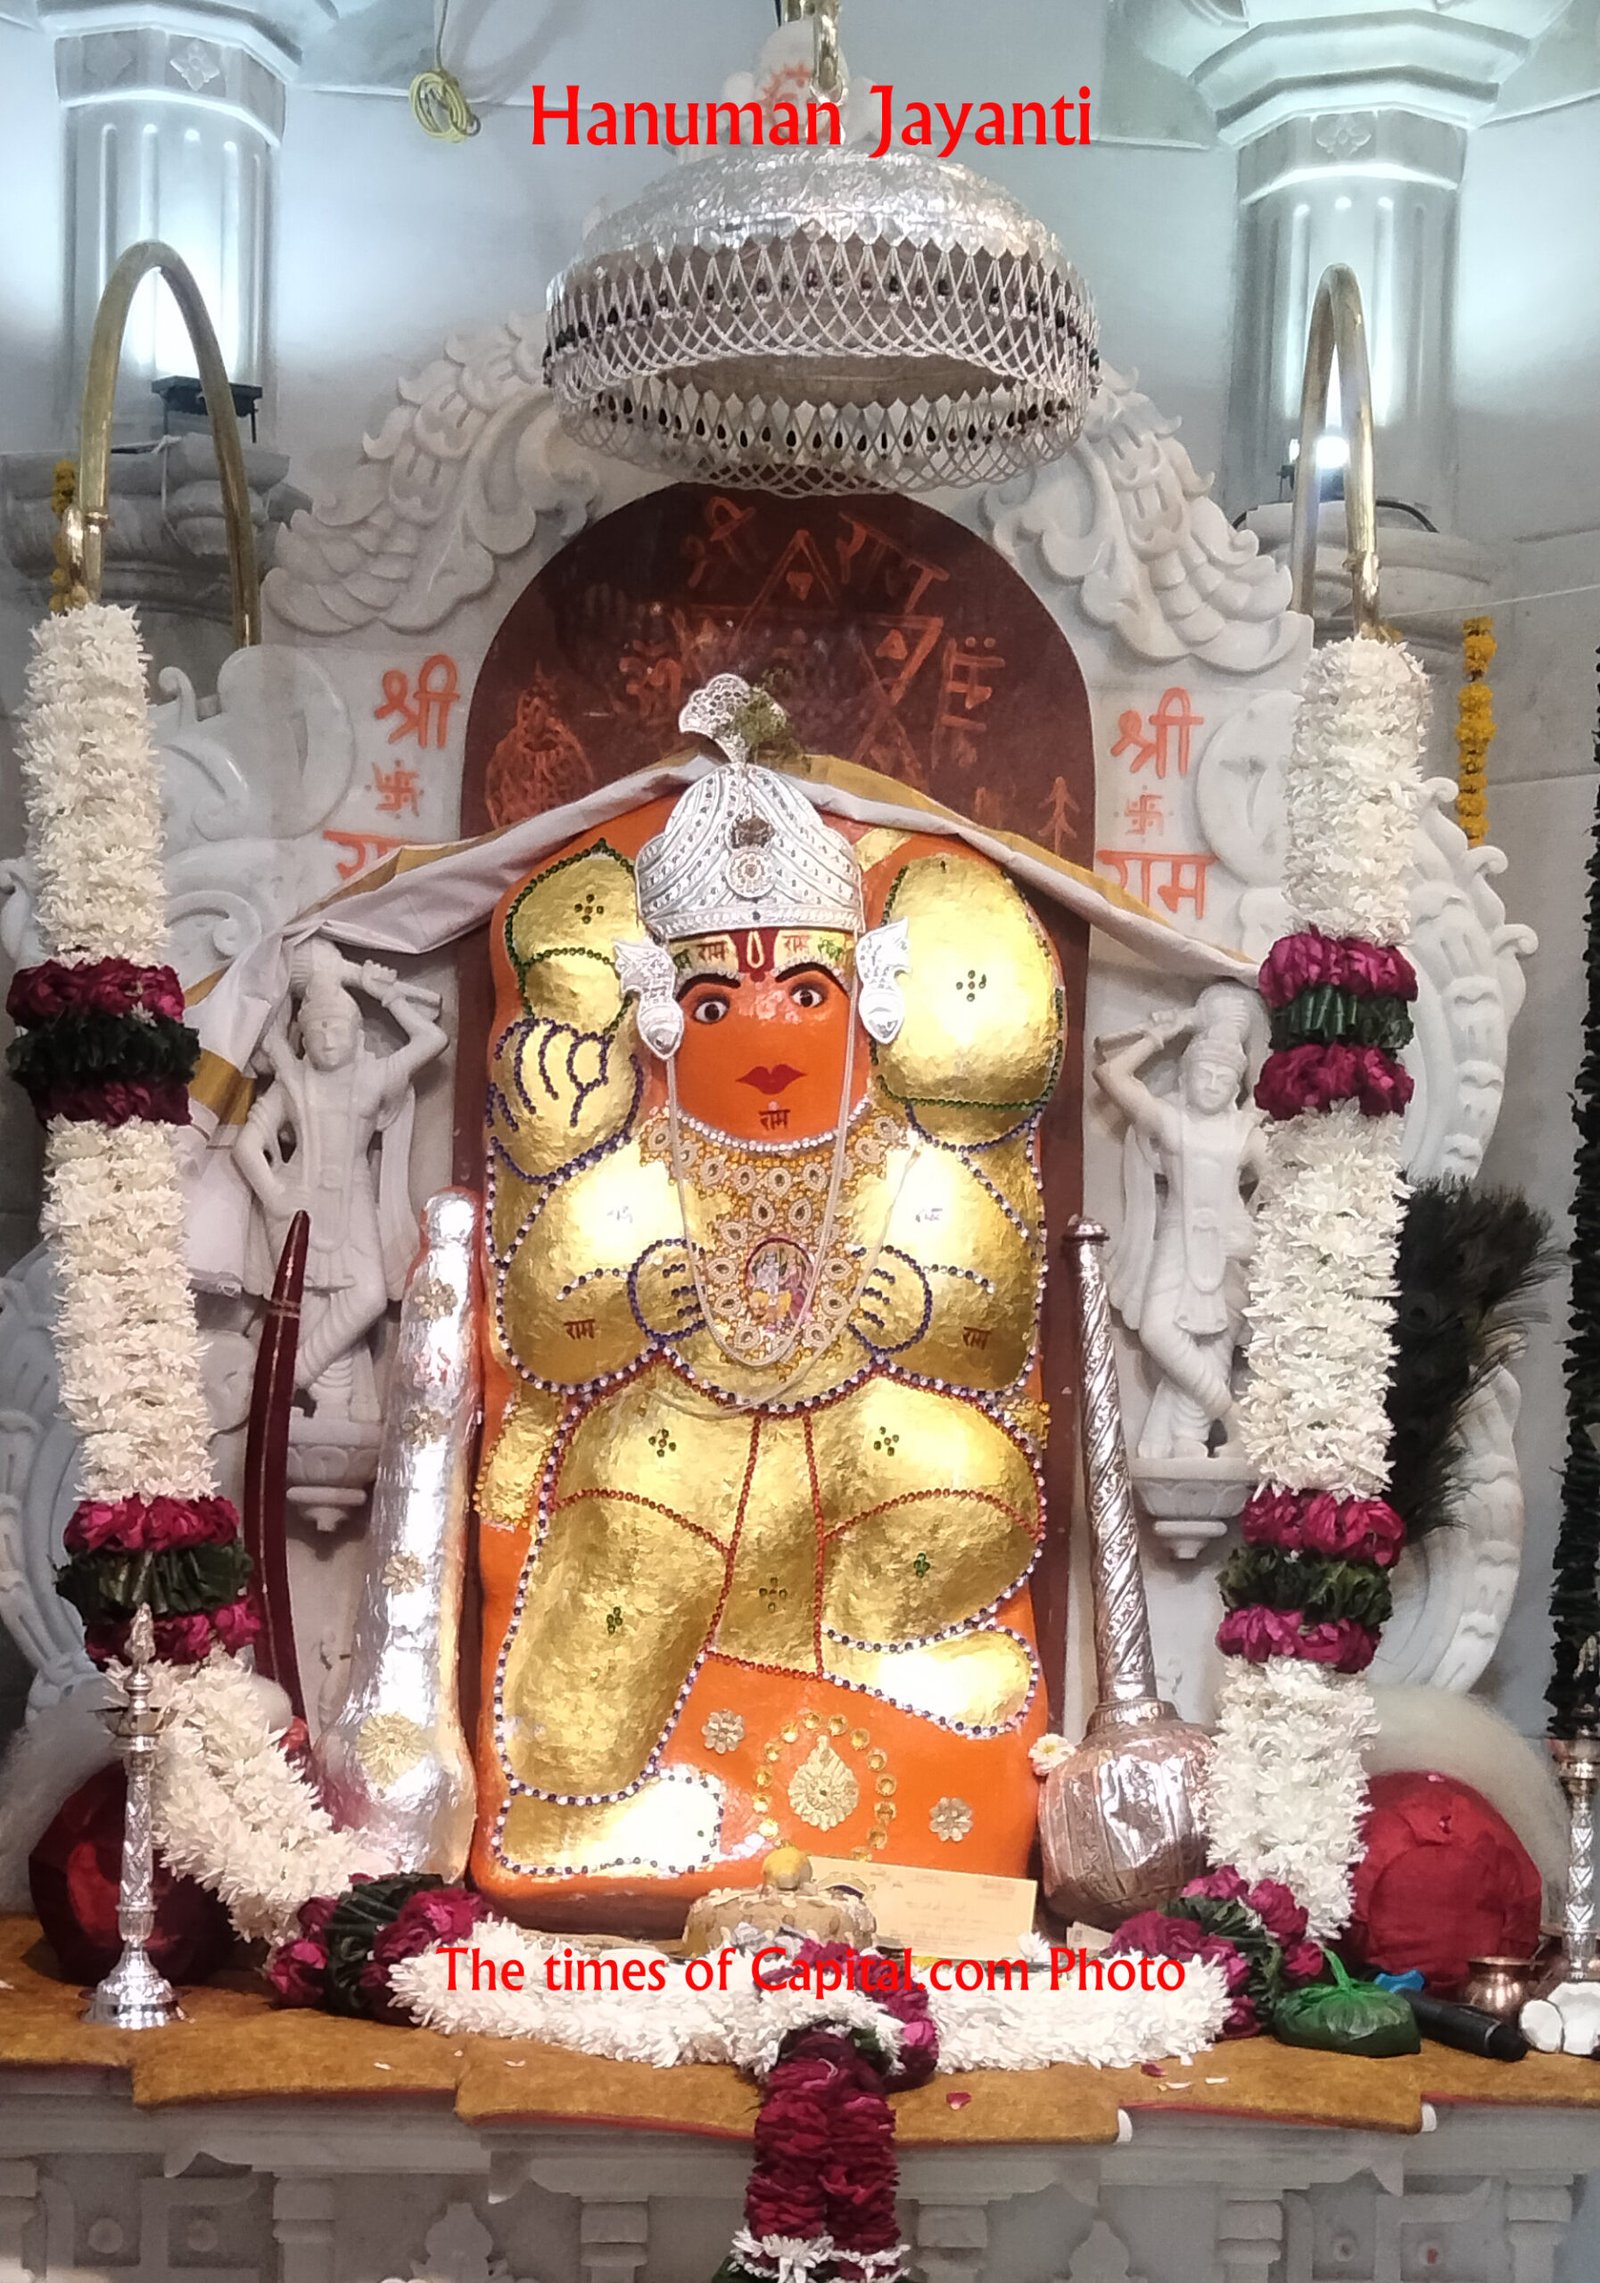 Hanuman Jayanti: 108 फीट हनुमान देवालयों में जय जयकार, श्री गुरु चरन सरोज रज, निज मनु मुकुर सूधारि। बरनऊं रघुबर बिमल जसु, जो दायकु फल चारि॥Good News